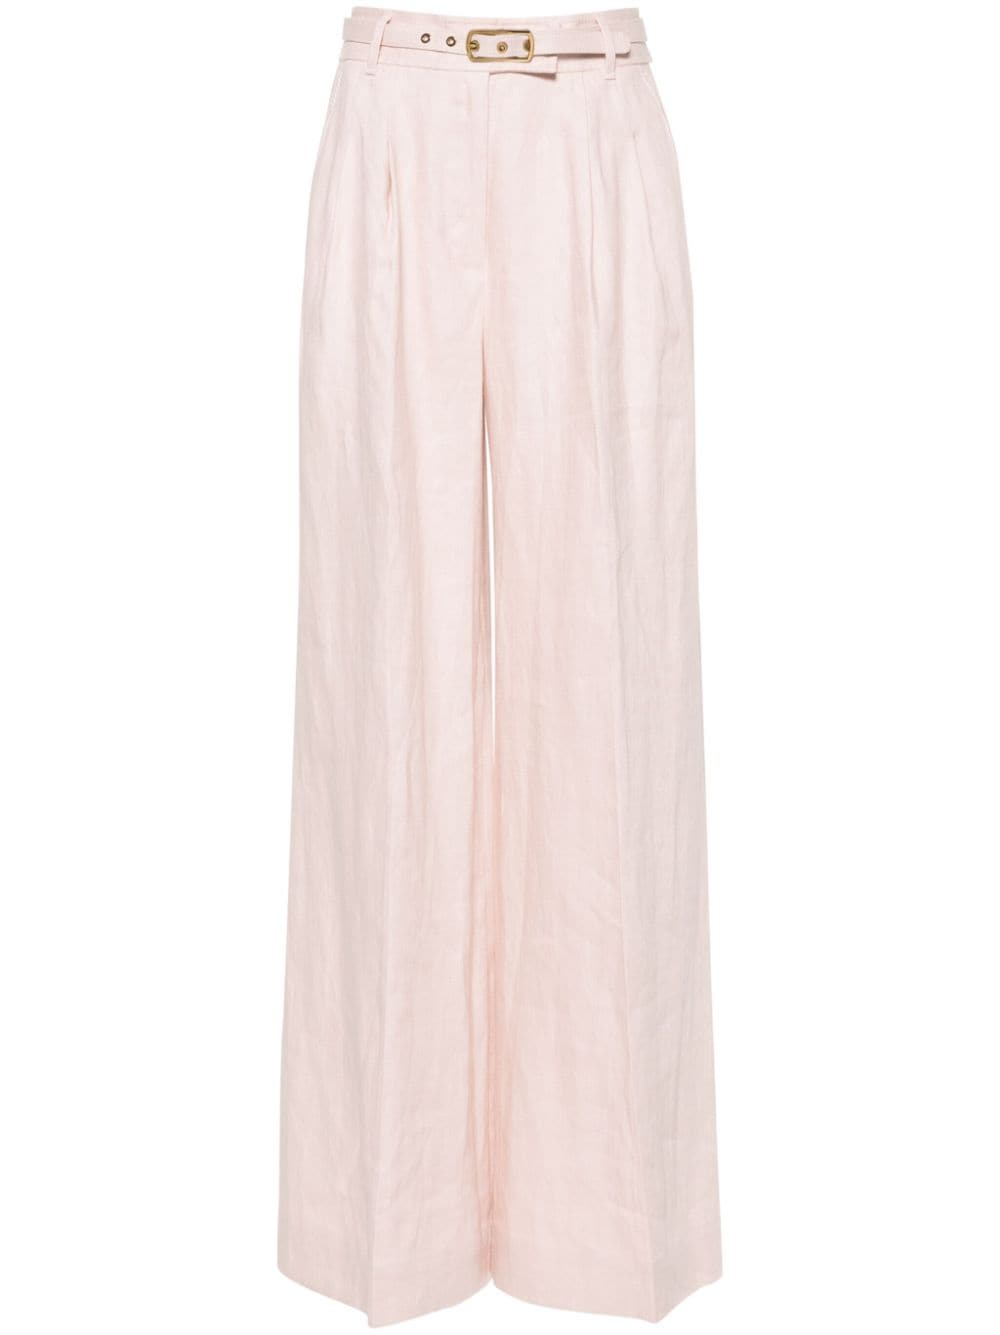 女装-SS24系列-粉色亚麻裤